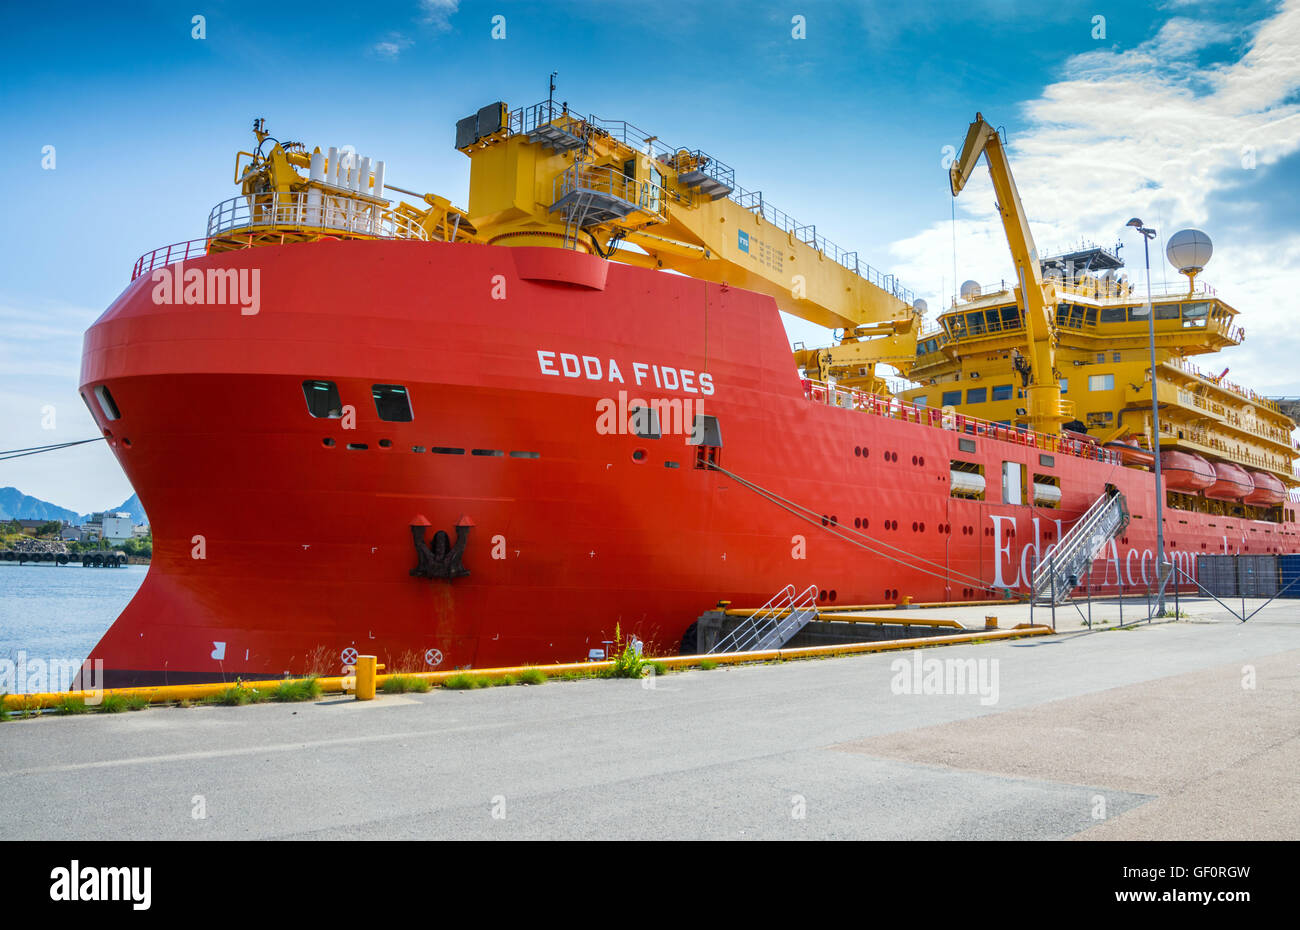 Edda Fides flotel, navire de soutien de l'industrie du pétrole, big red ship Banque D'Images